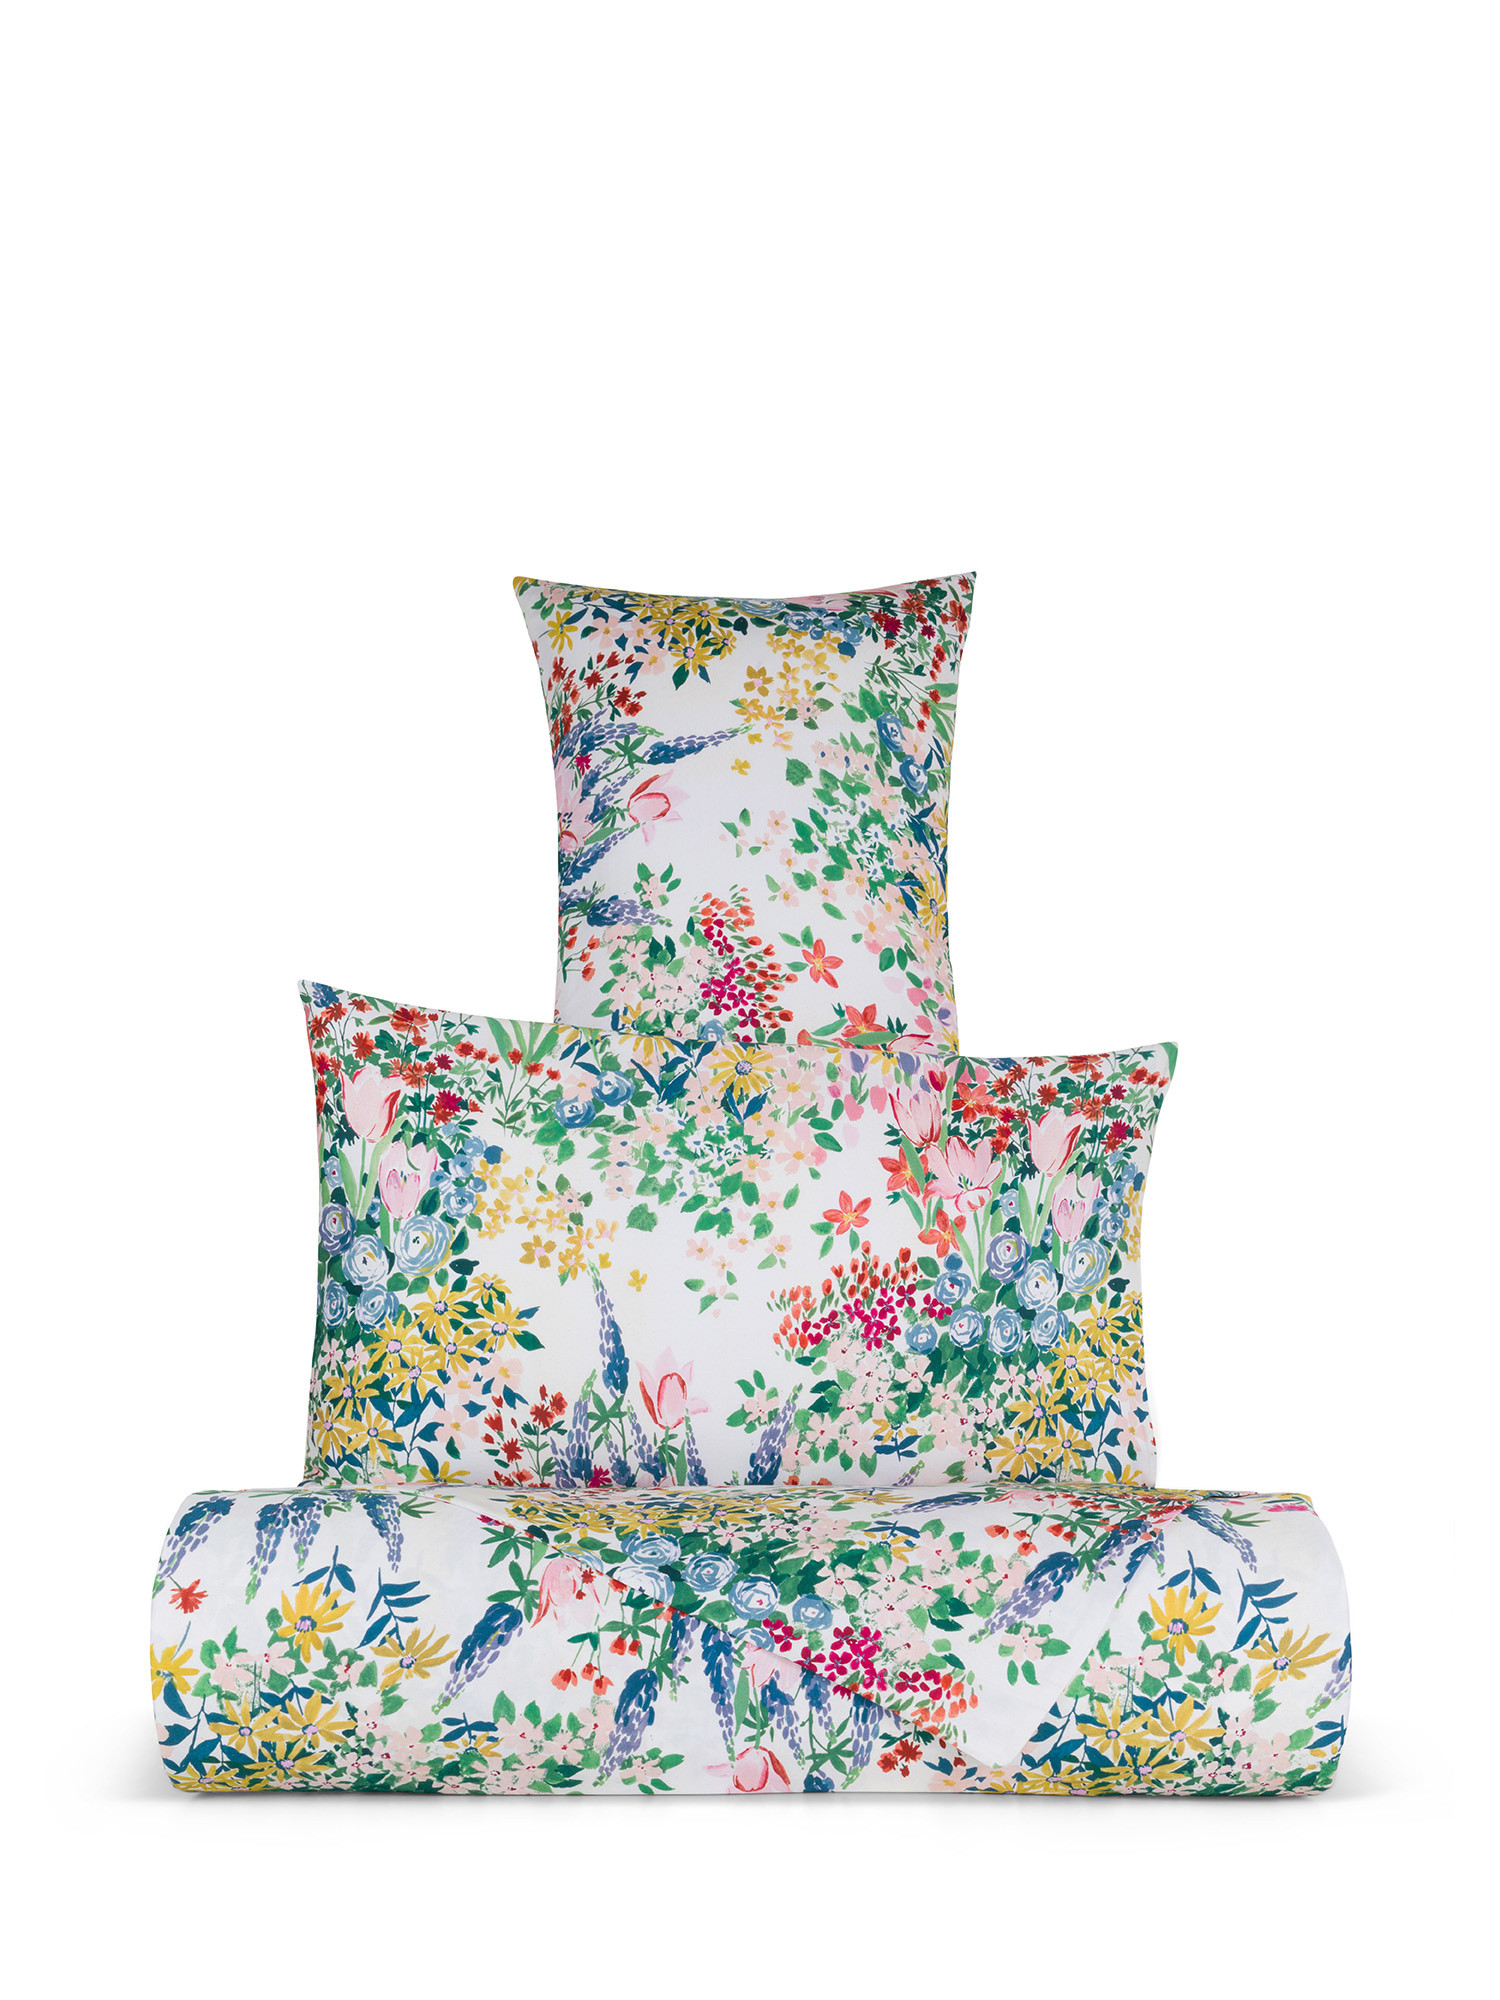 Floral patterned cotton satin duvet cover set, Multicolor, large image number 0